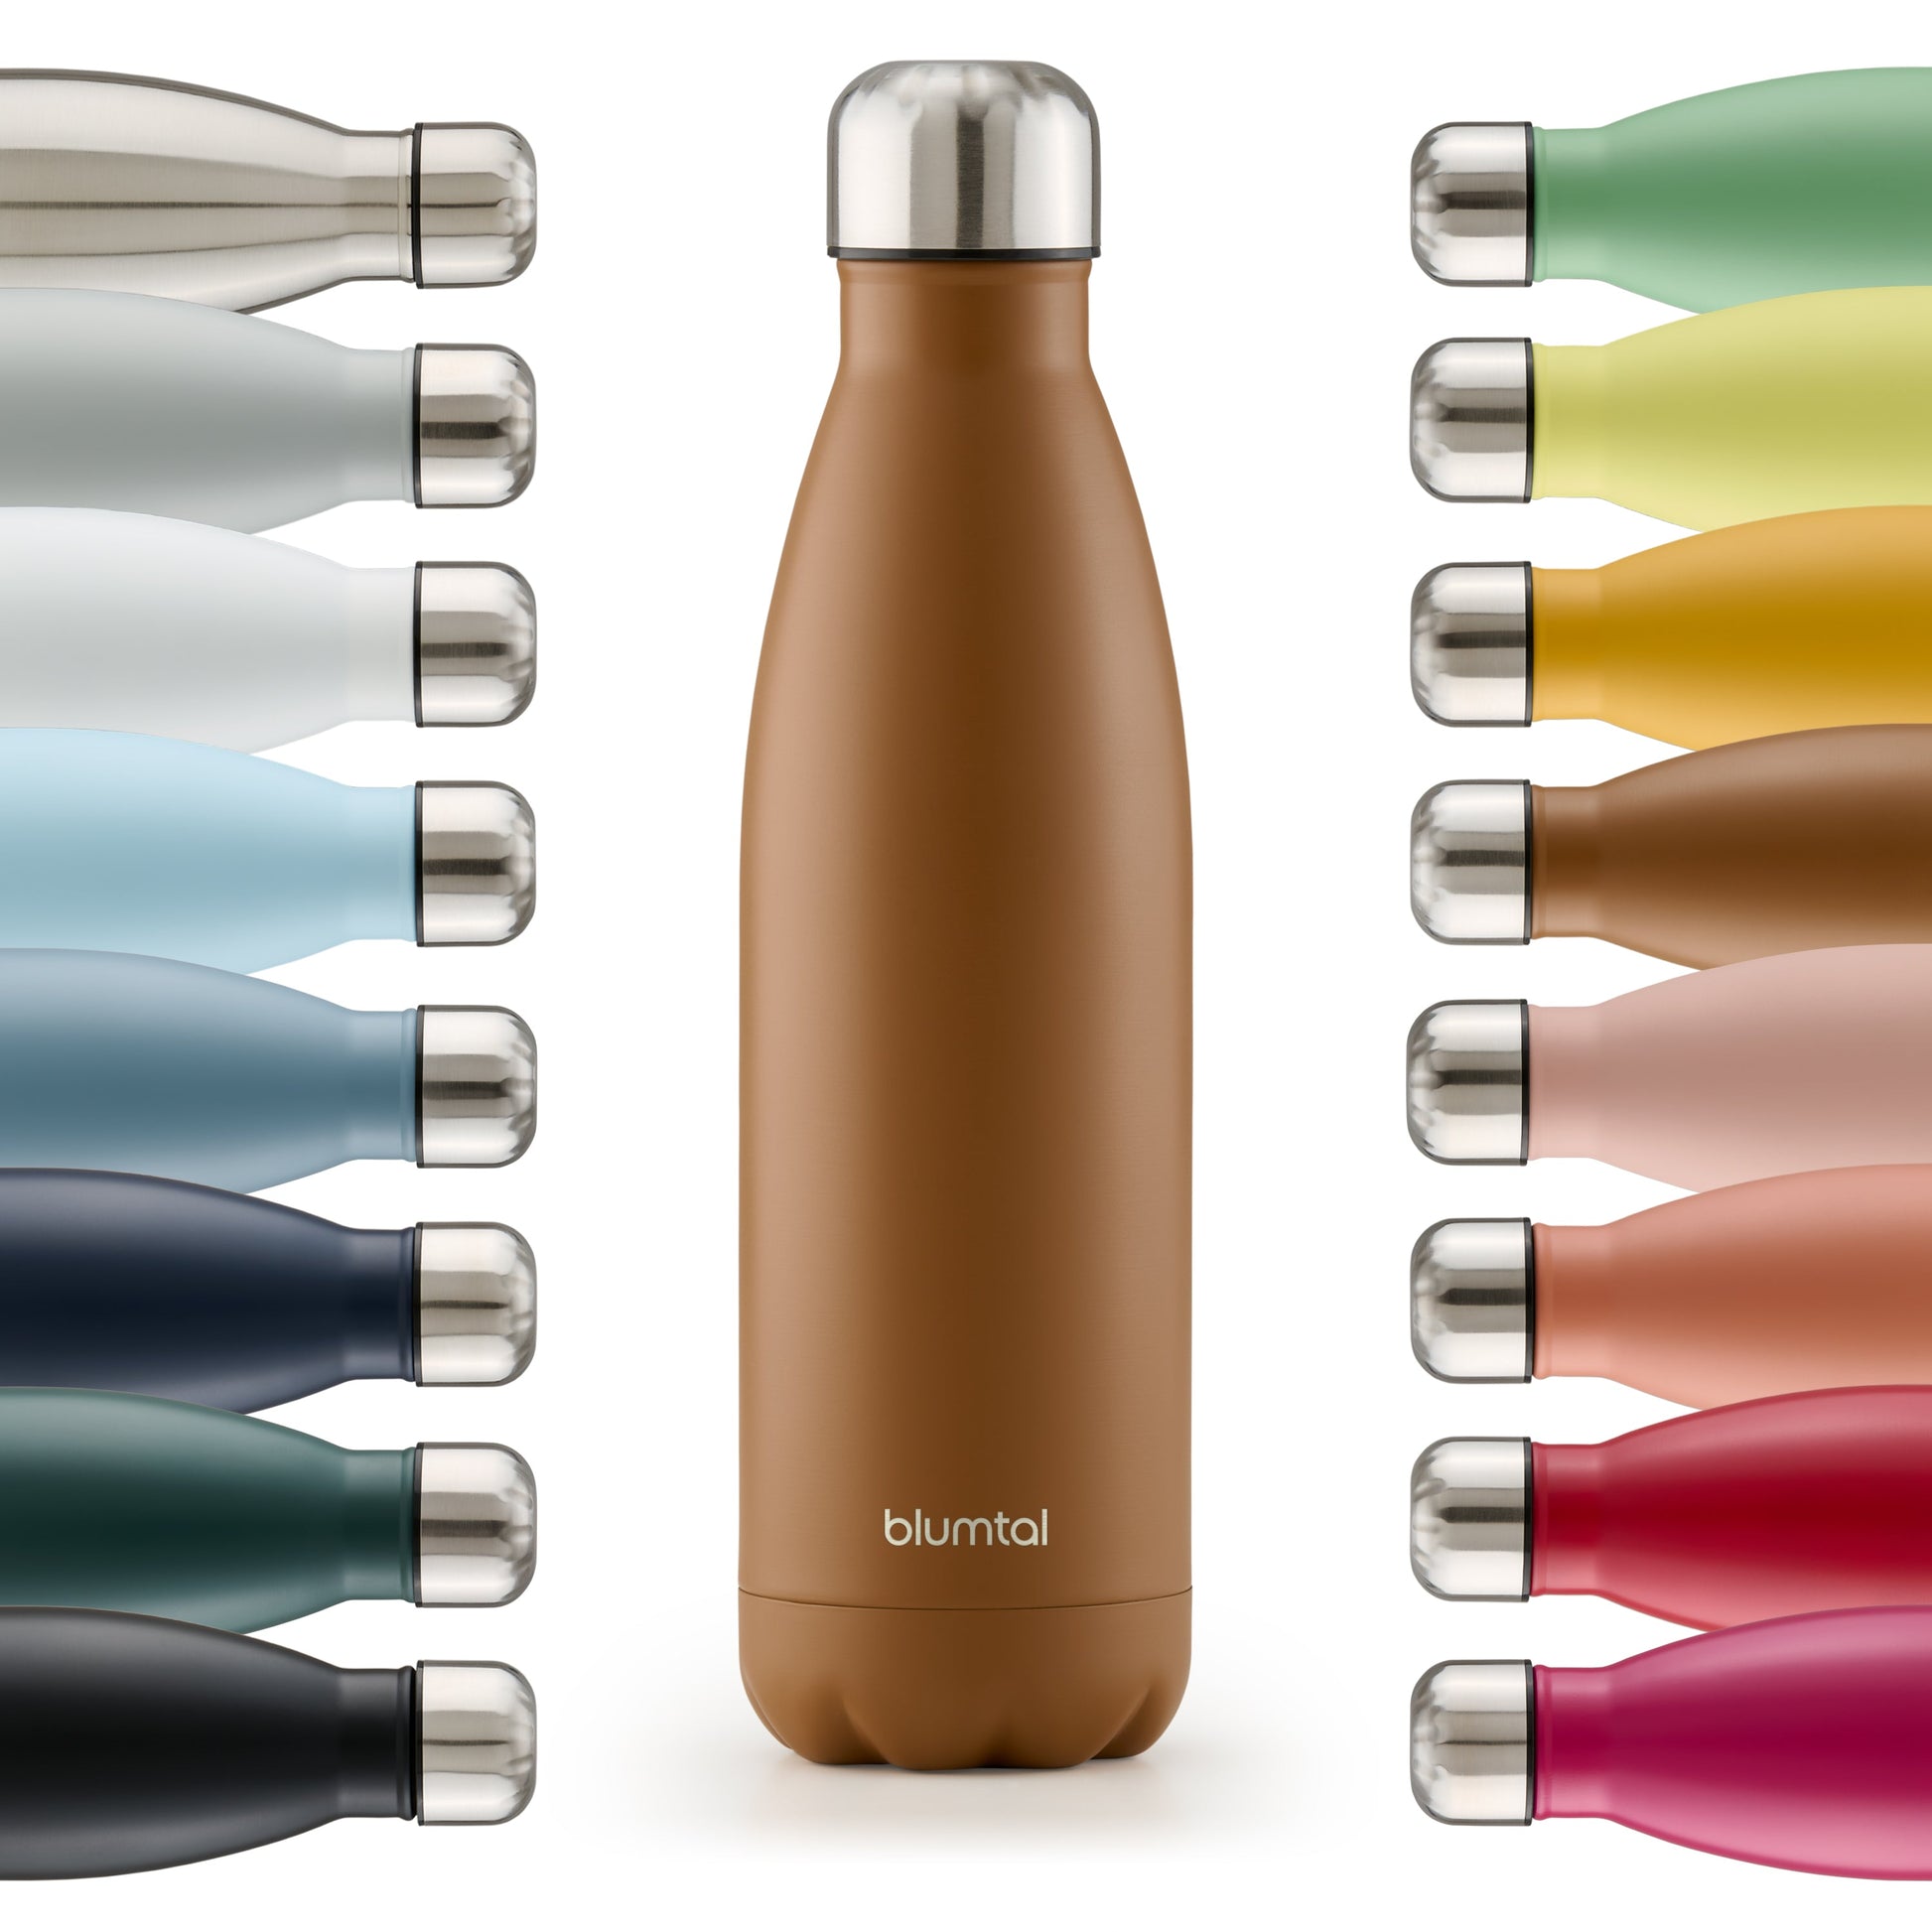 Farbige Auswahl an isolierten Edelstahl-Trinkflaschen von blumtal in einer Reihe angeordnet mit Fokus auf eine vorderseitige pumpkin braun farbene Flasche.